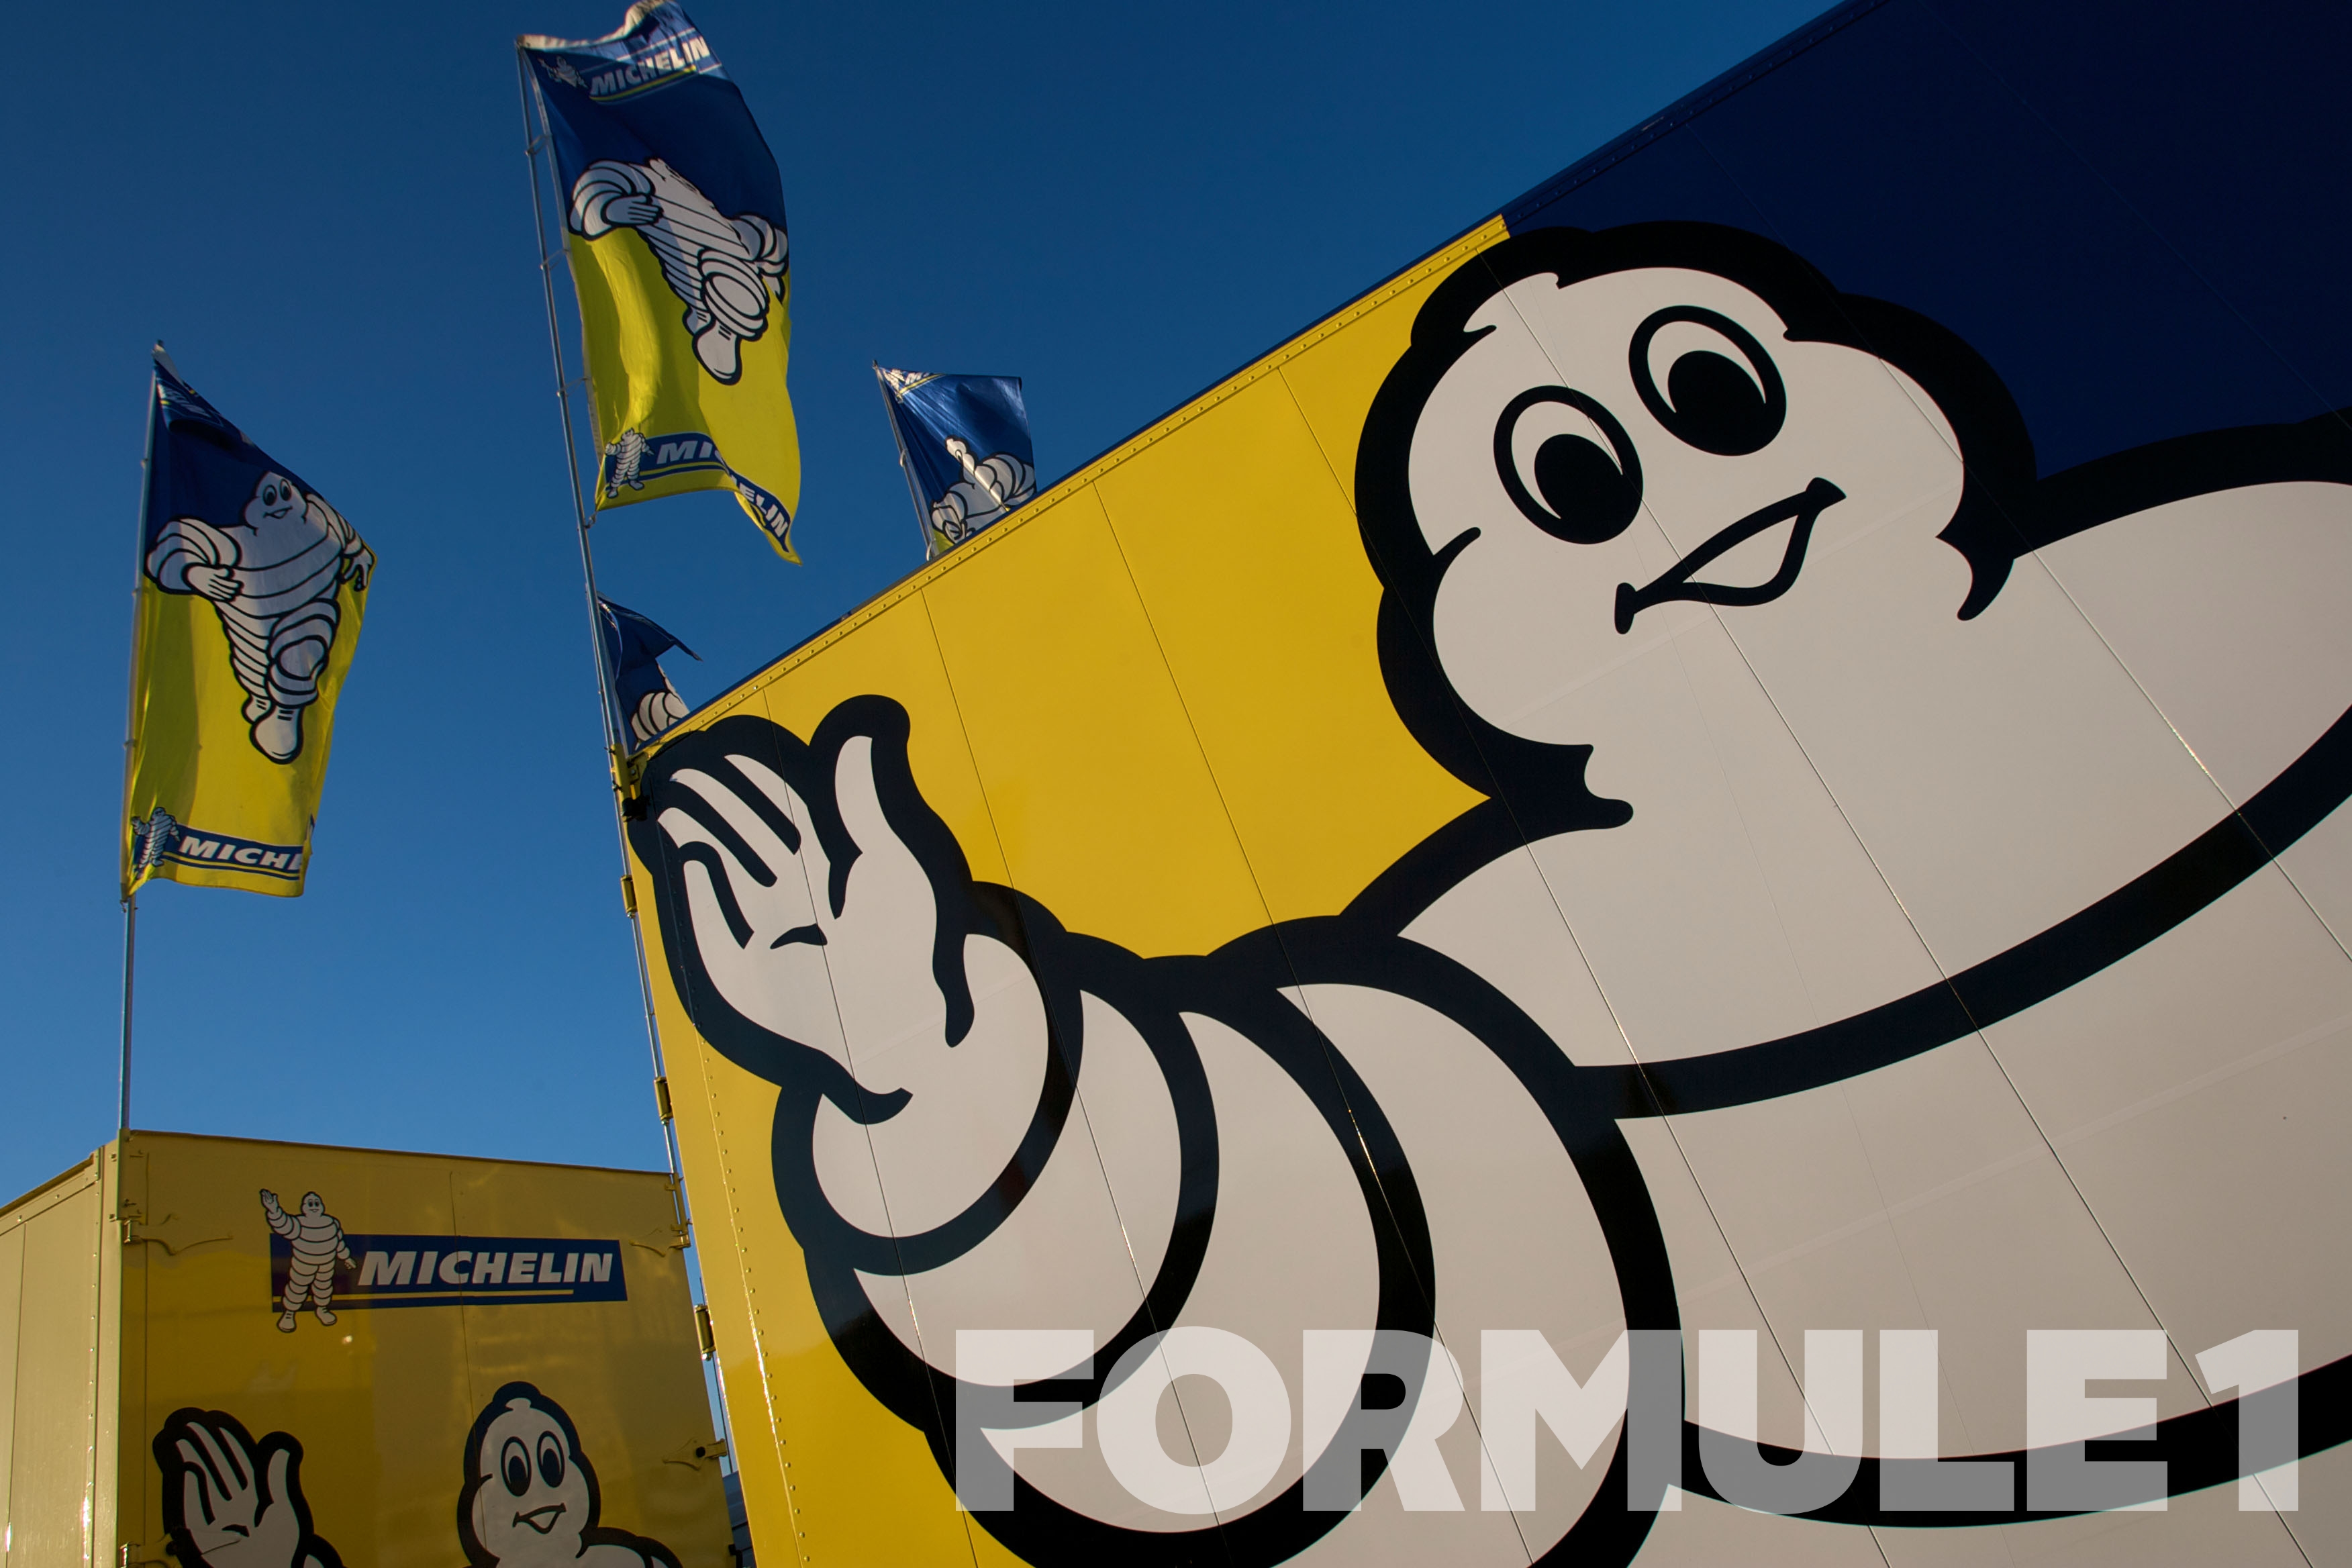 Michelin meldt zich officieel als bandenleverancier